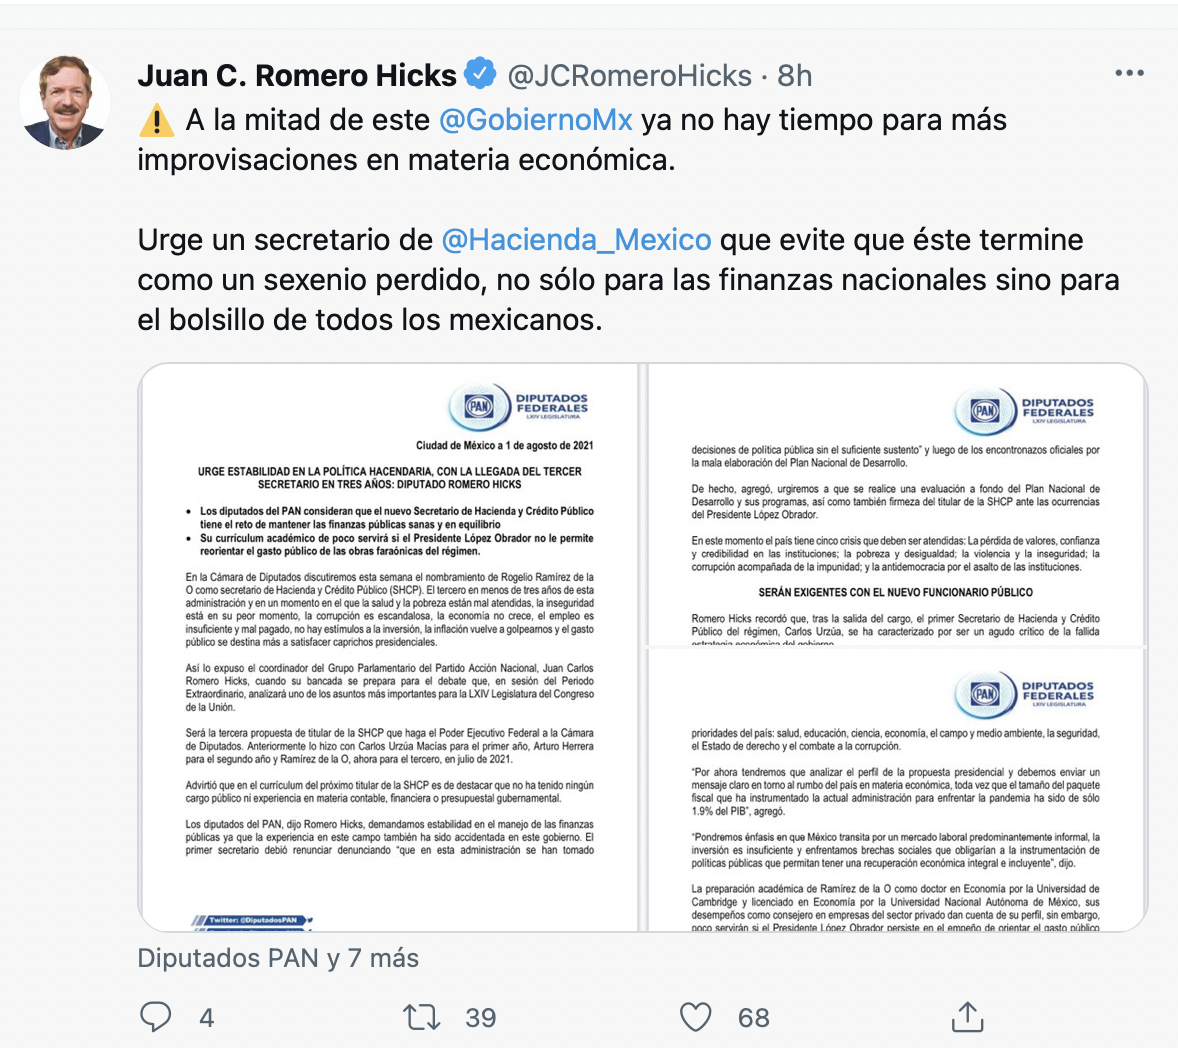 Juan Carlos Romero Hicks